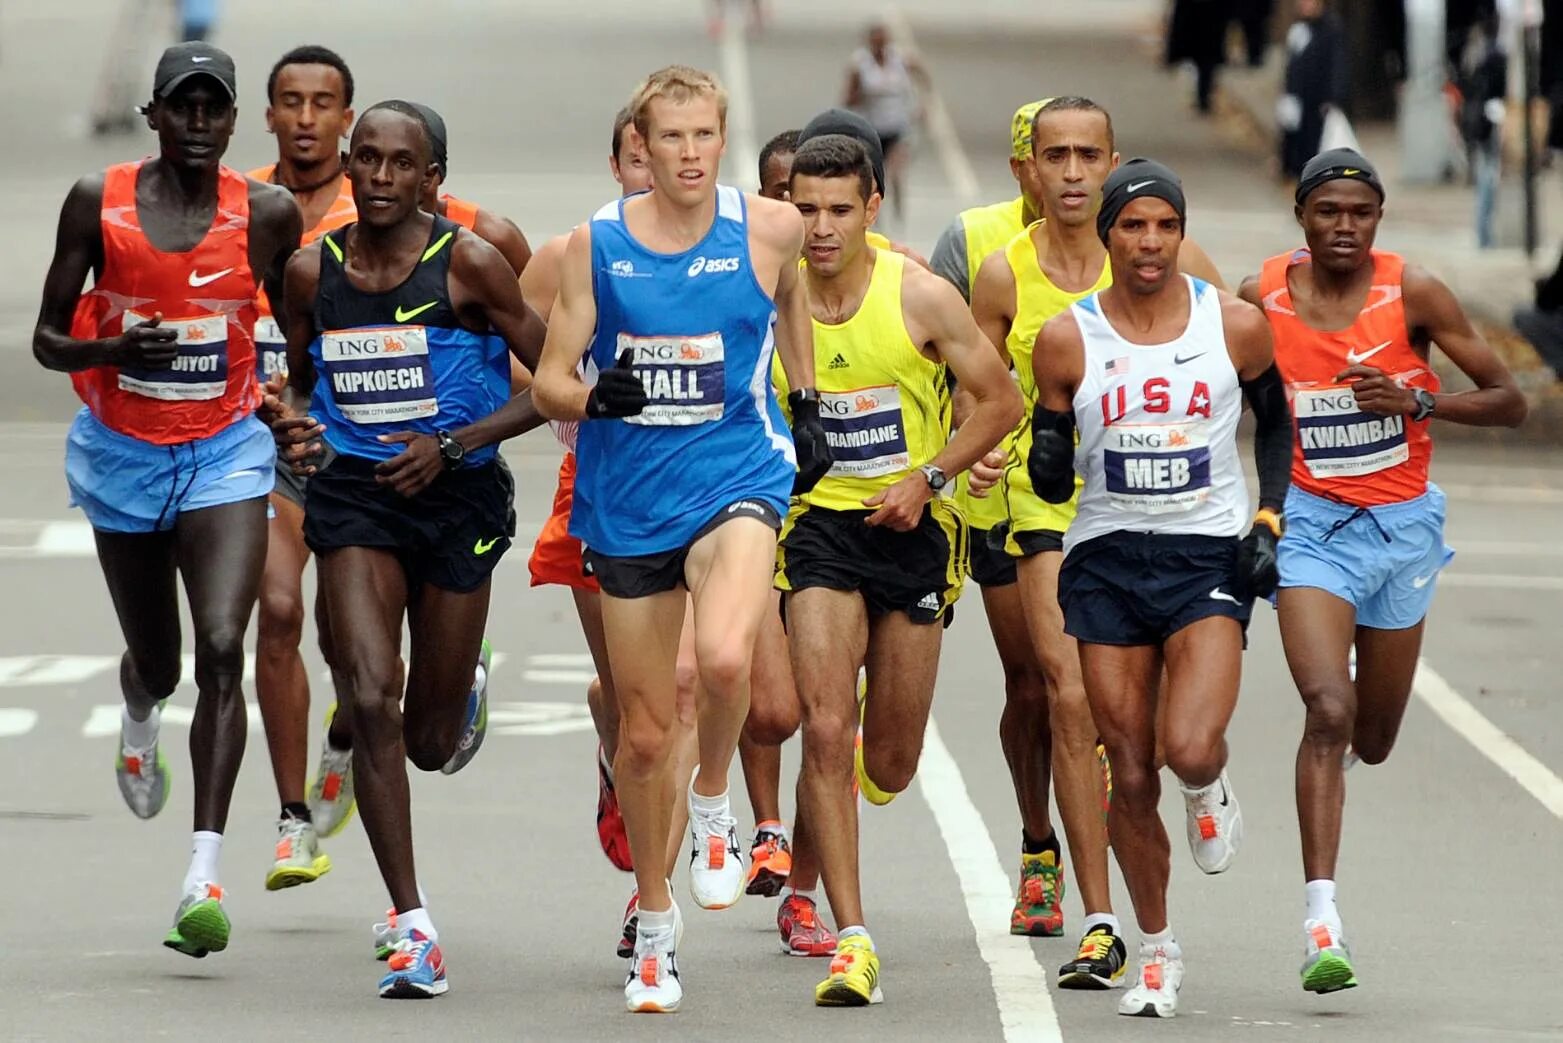 Эллисон Браун марафонец. Бег на длинные дистанции (5000 м, 10000 м, 42195 м). Легкая атлетика марафонский бег. Стайерский бег в легкой атлетике.